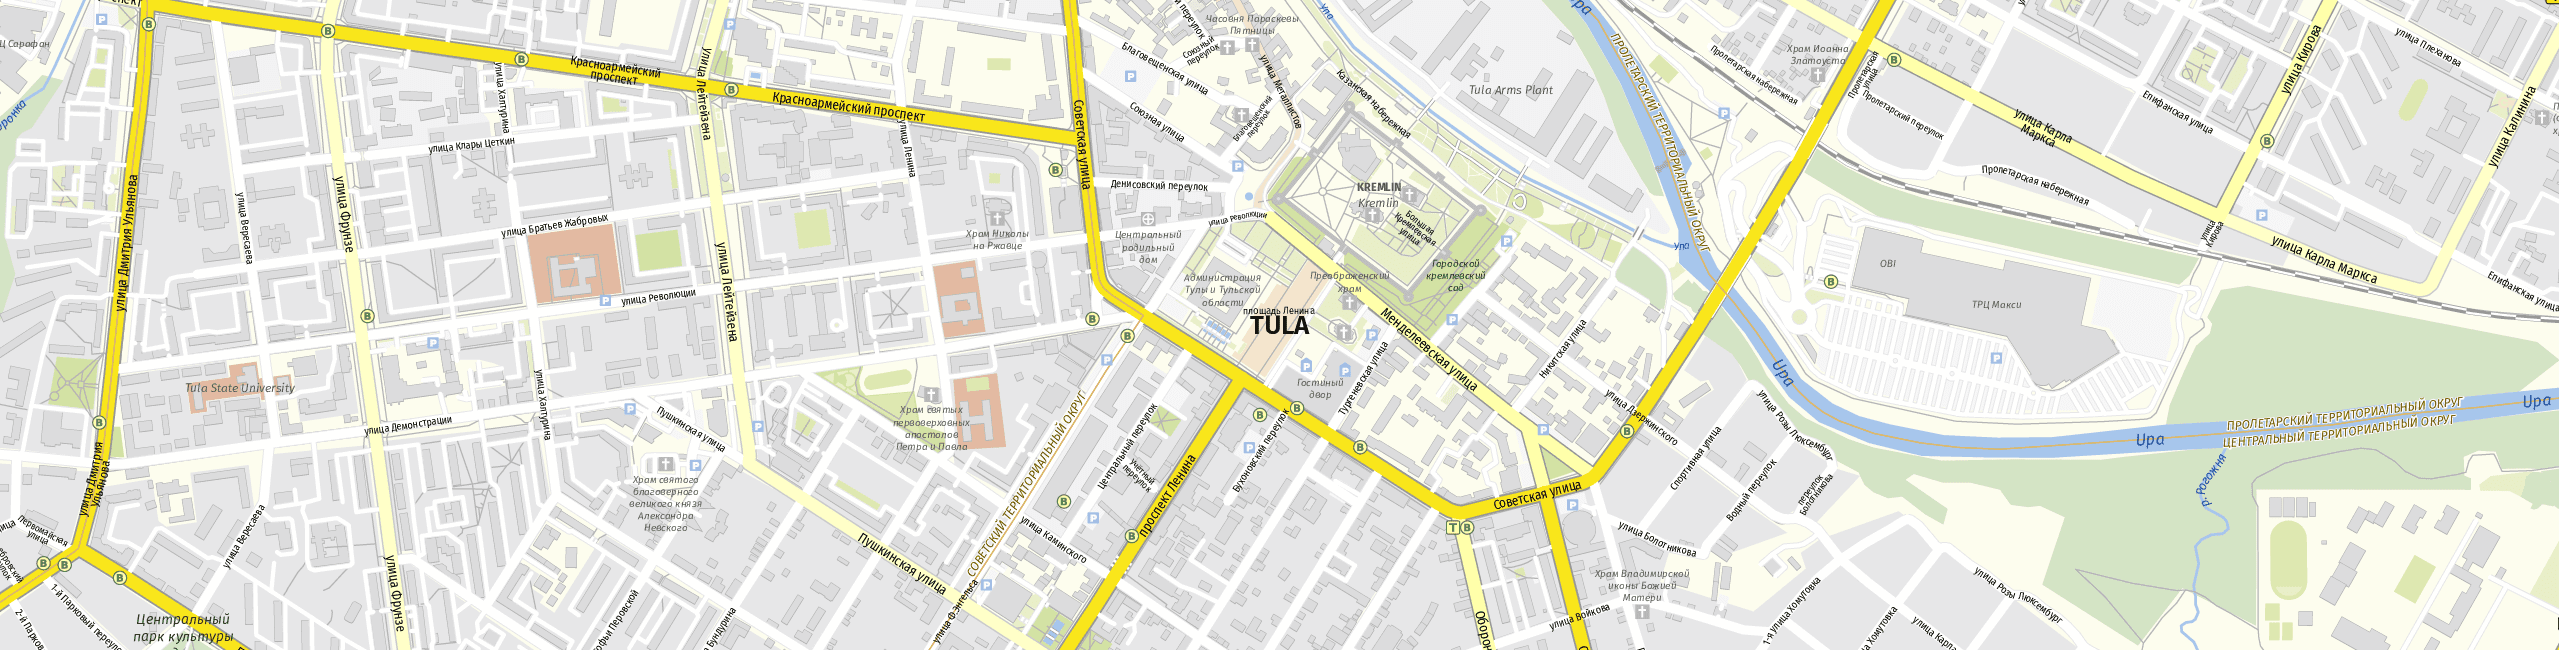 Stadtplan Tula zum Downloaden.